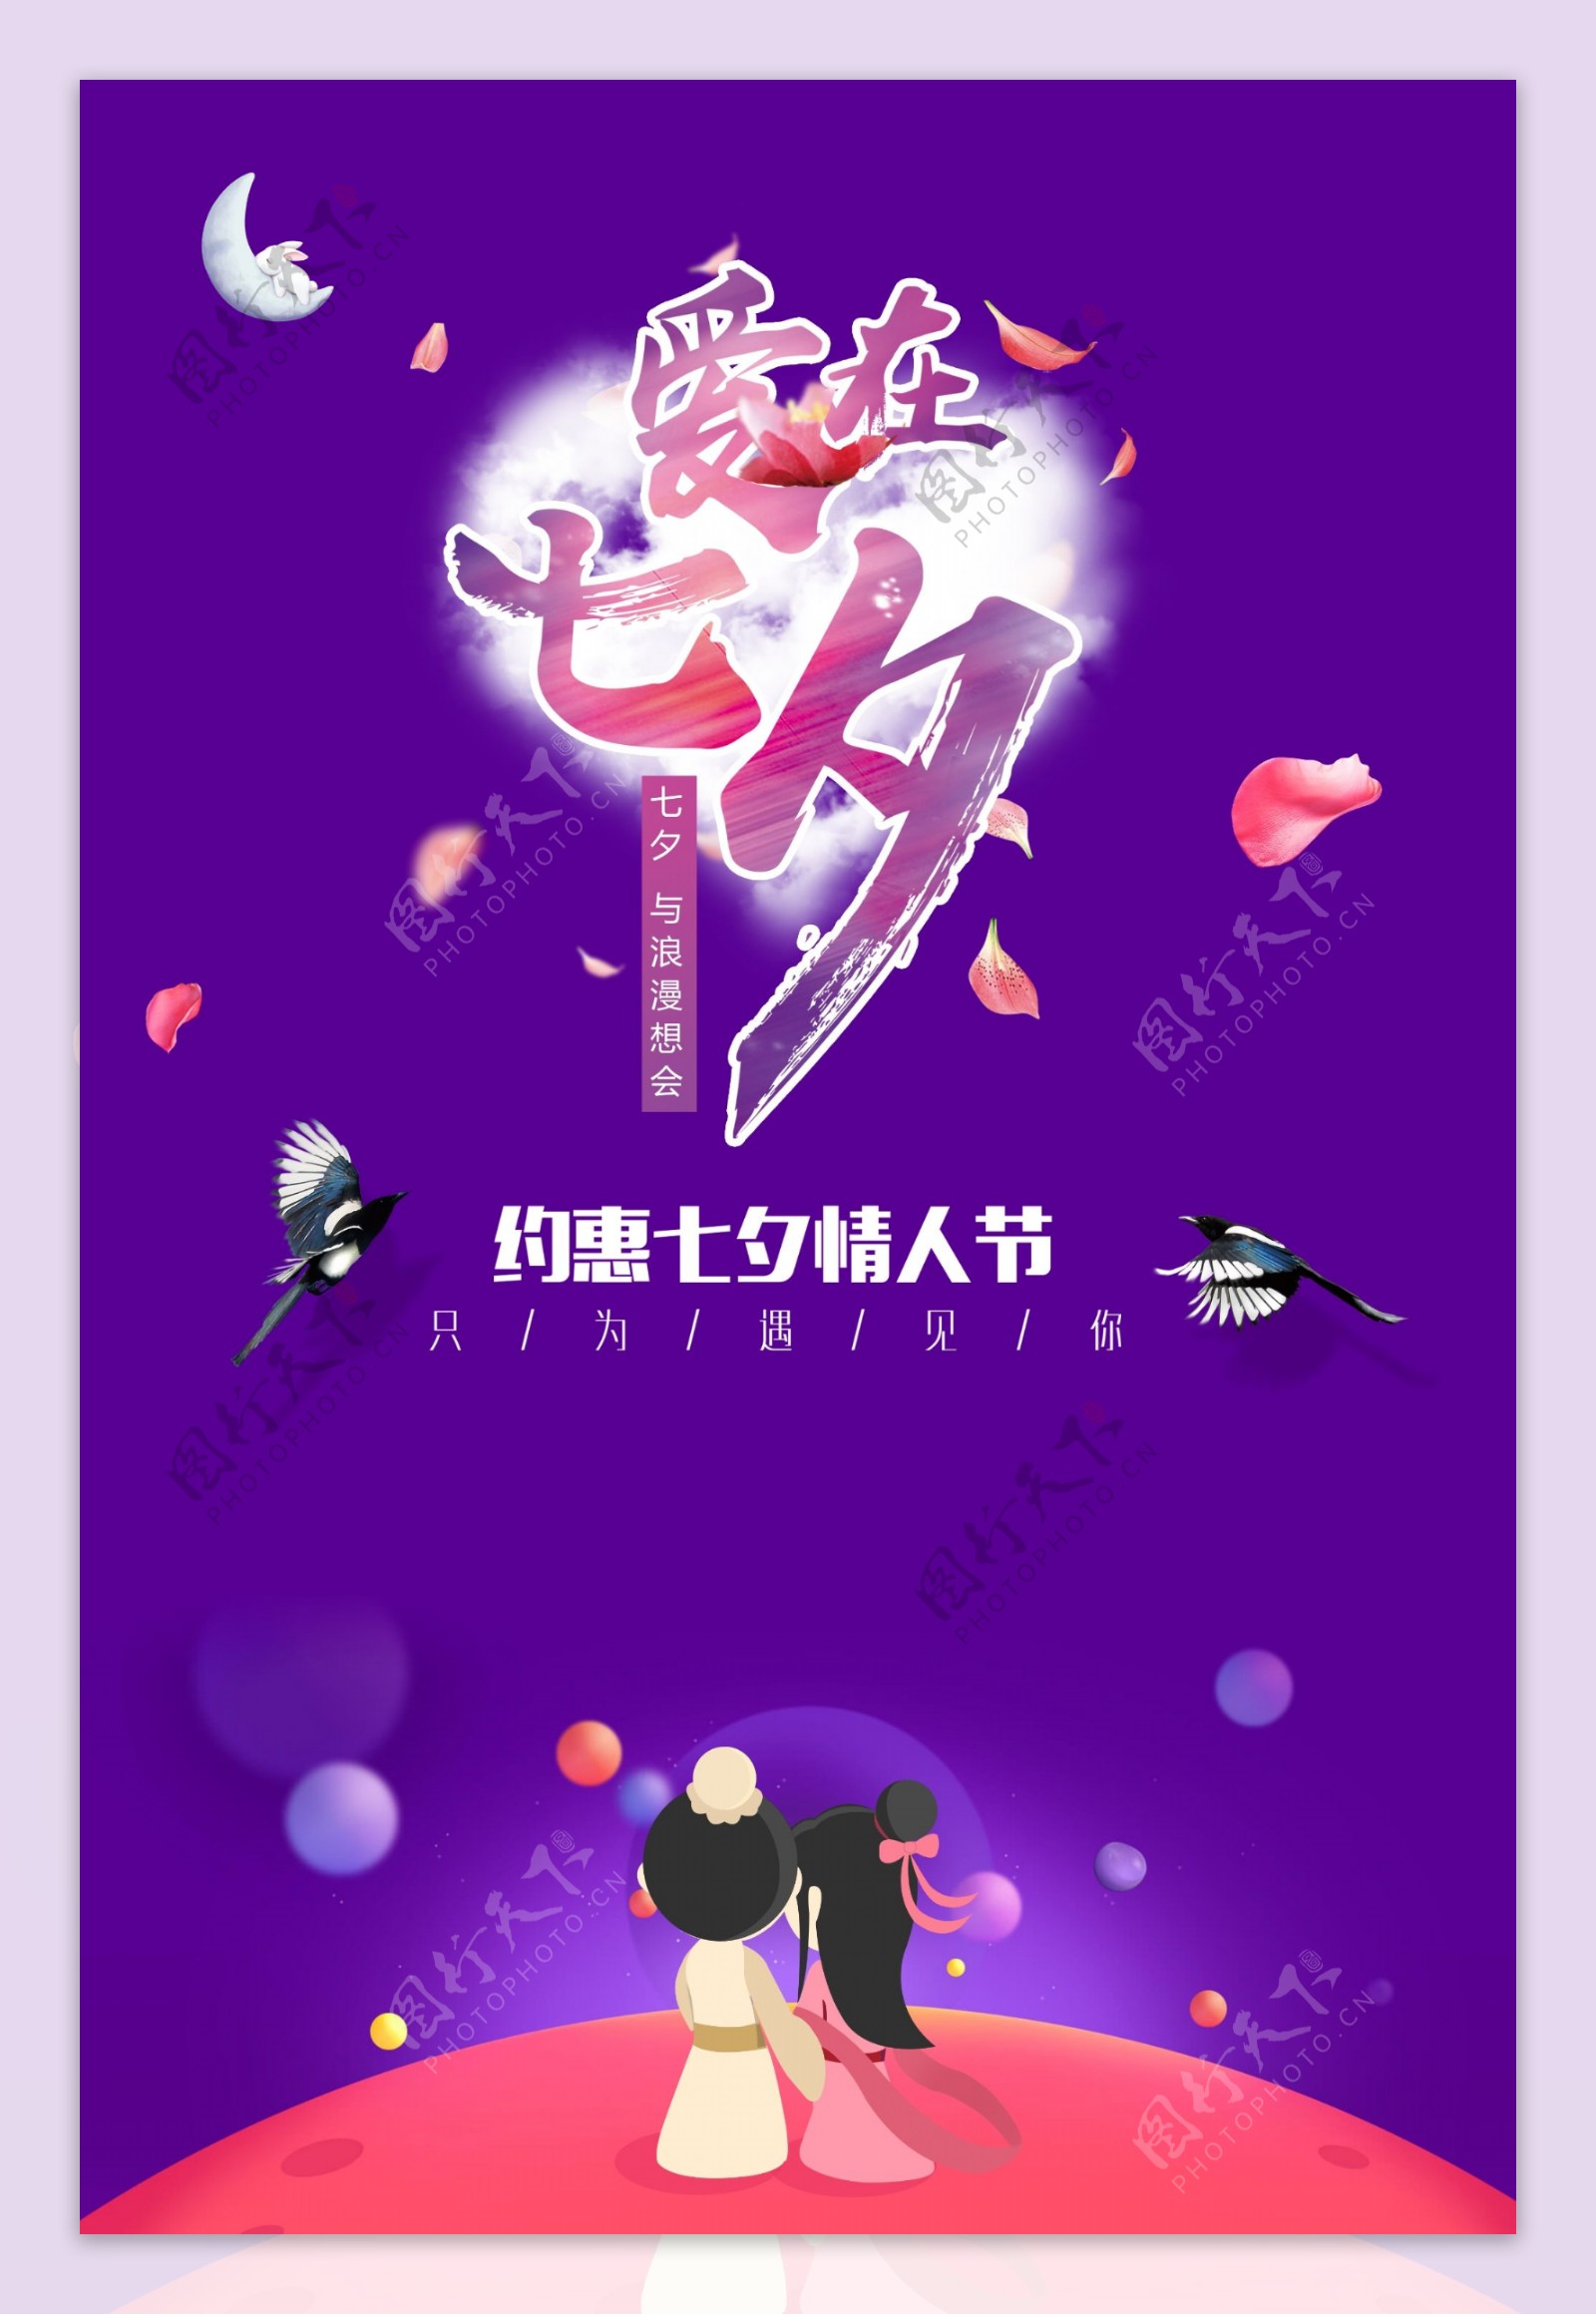 浪漫七夕节促销宣传海报